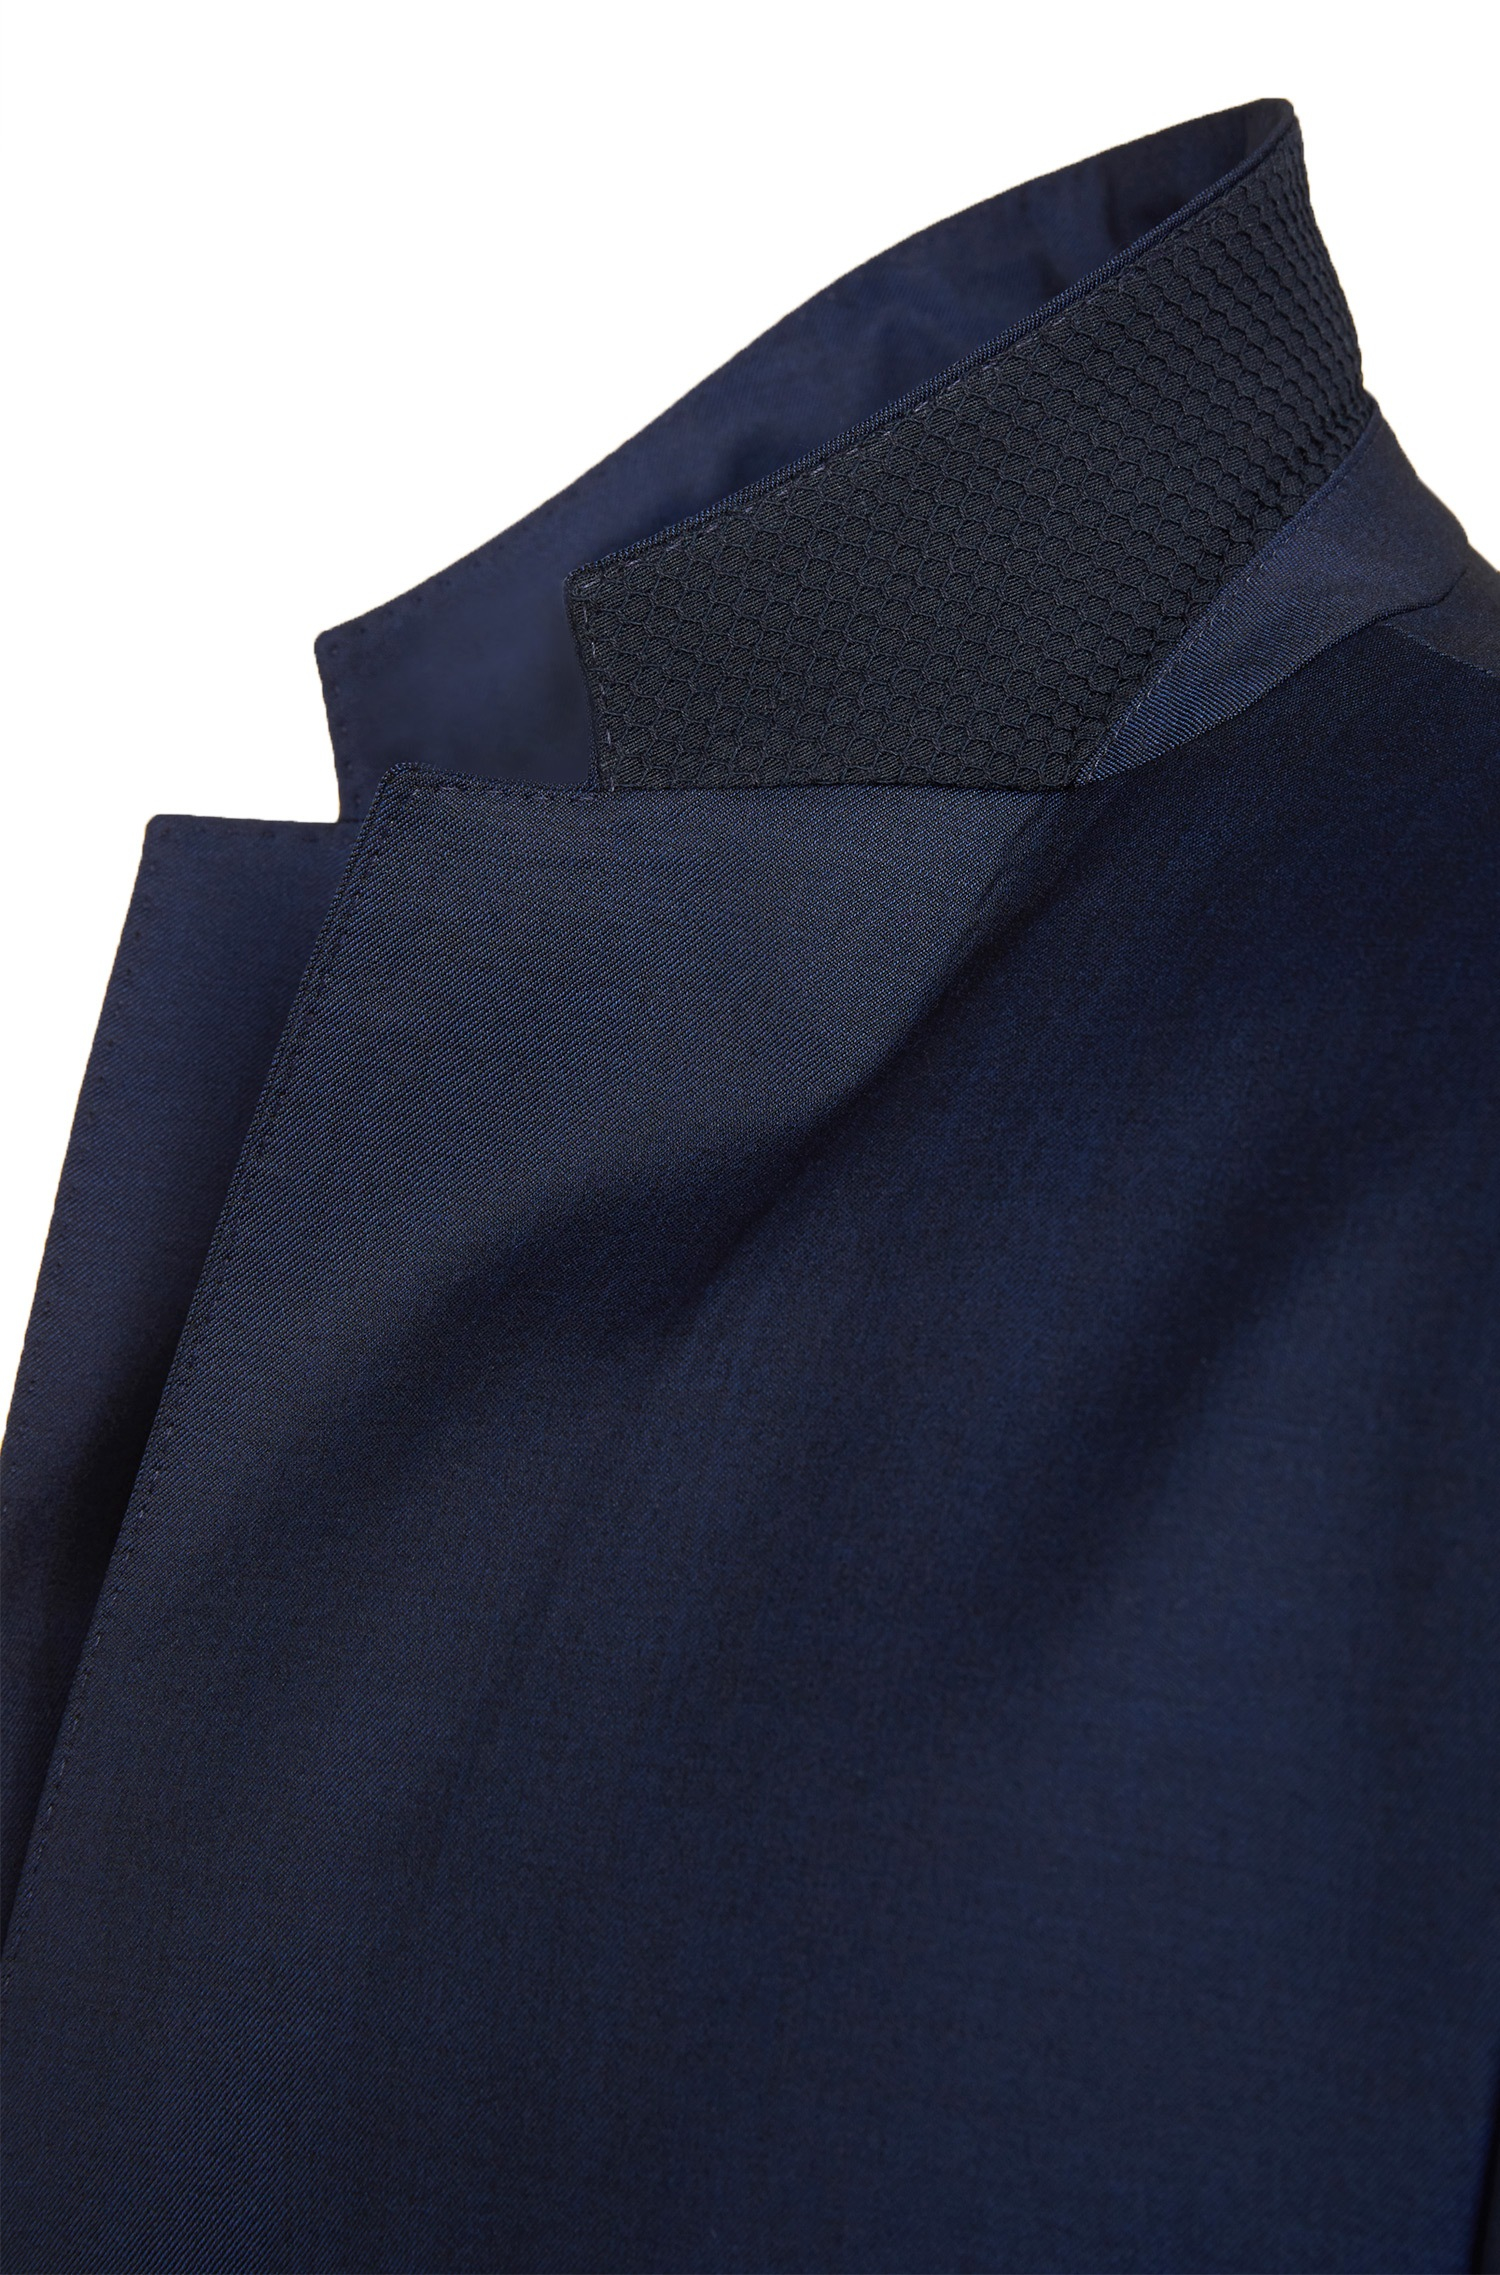 BOSS by Hugo Boss 'nestro/byte' | Slim Fit, Super 120 Italian Wool Traveler  Suit in Dark Blue (Blue) for Men - Lyst